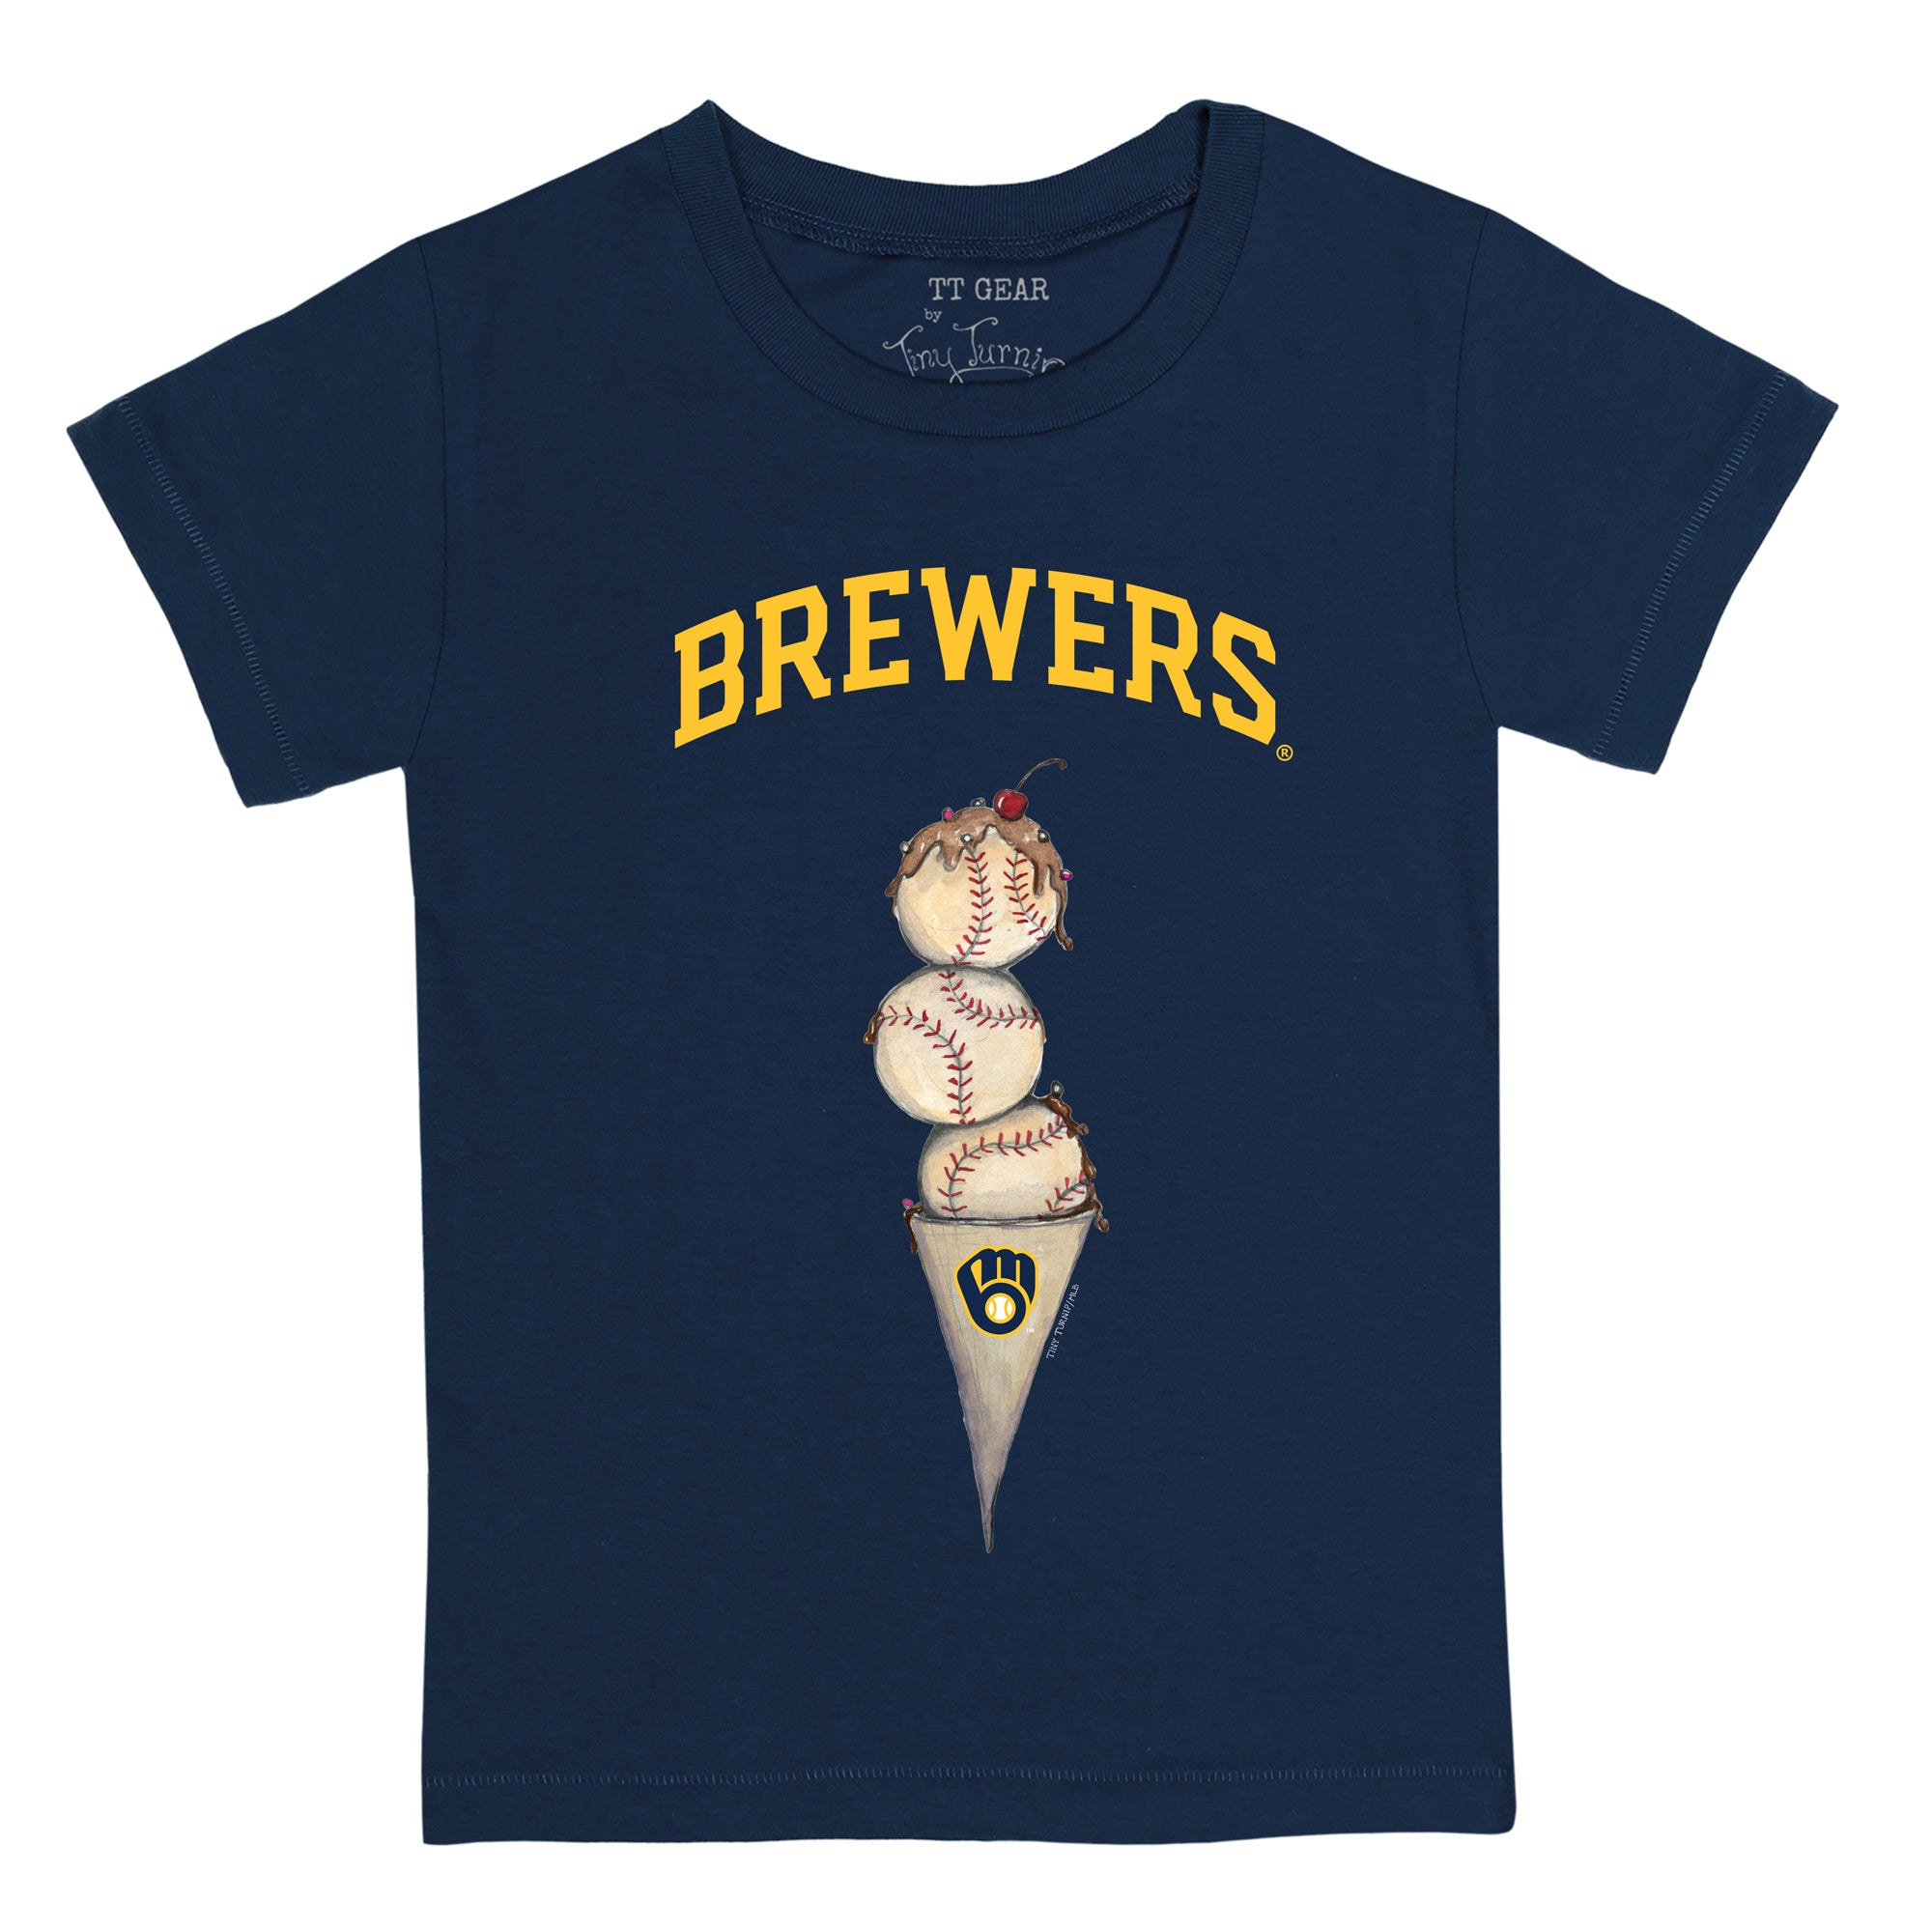 Lids Milwaukee Brewers Tiny Turnip Women's Triple Scoop T-Shirt - White